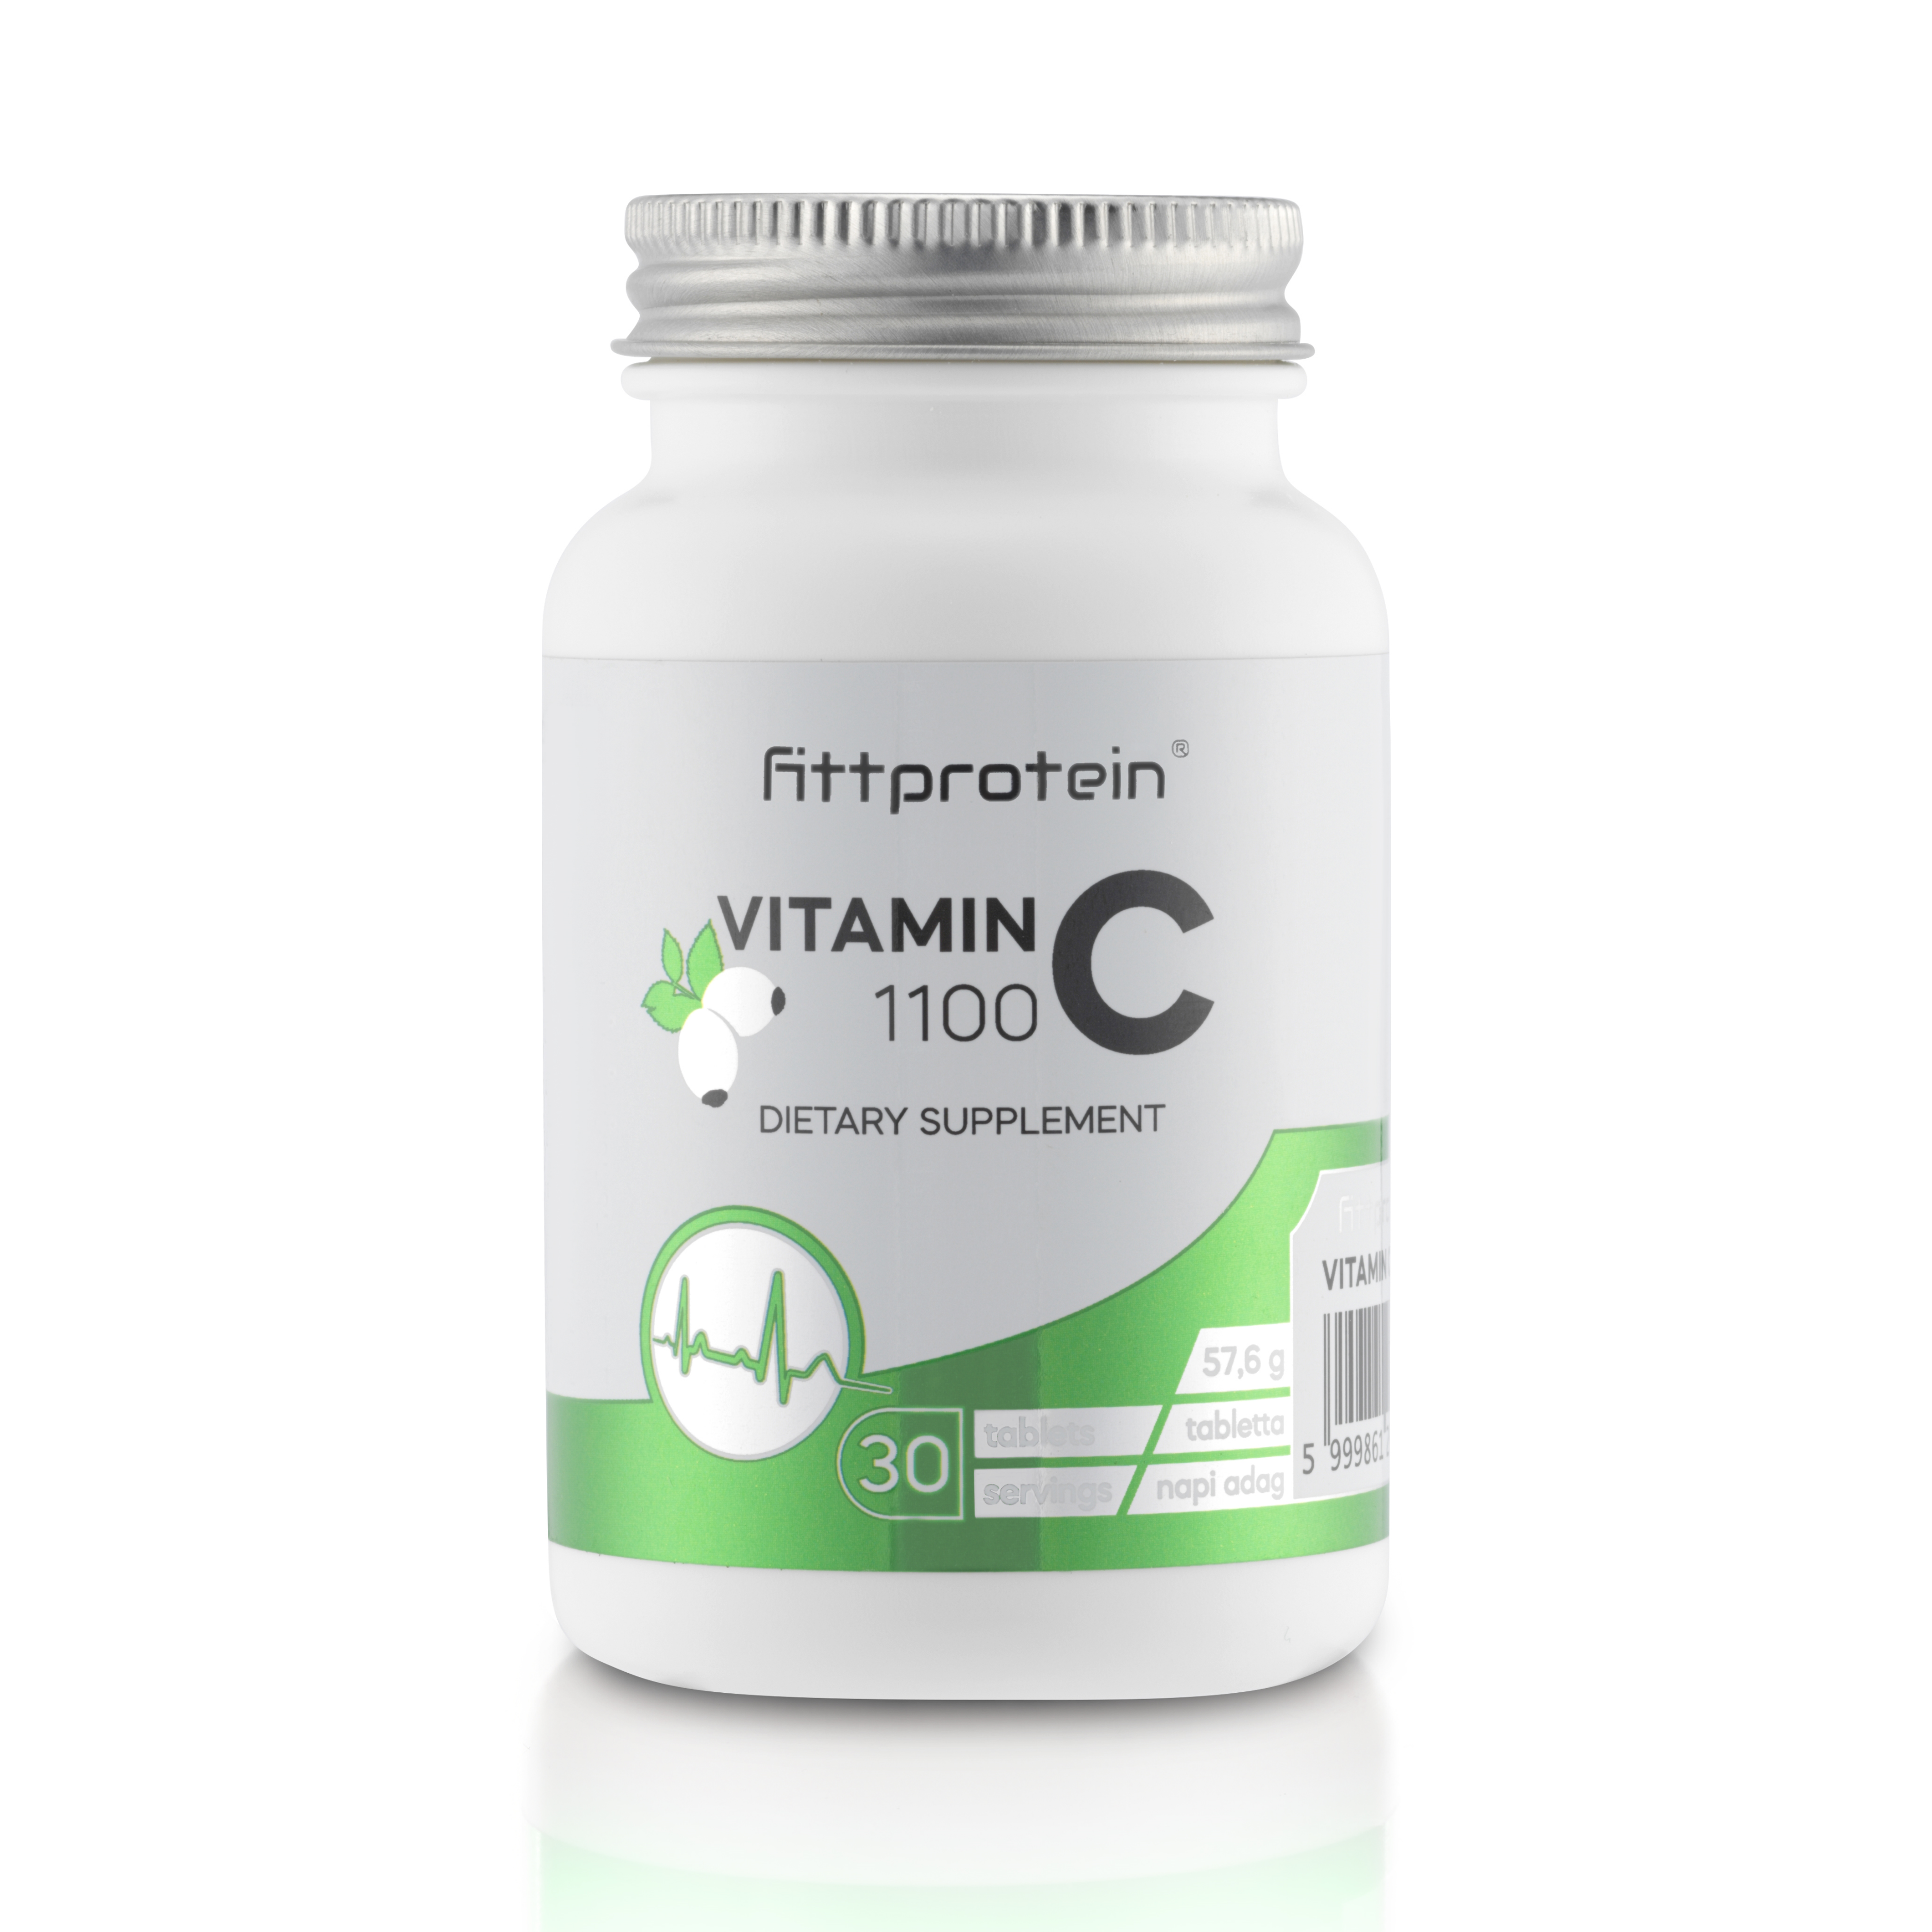 Fittprotein Vitamin C 1100 - 30 db kapszula